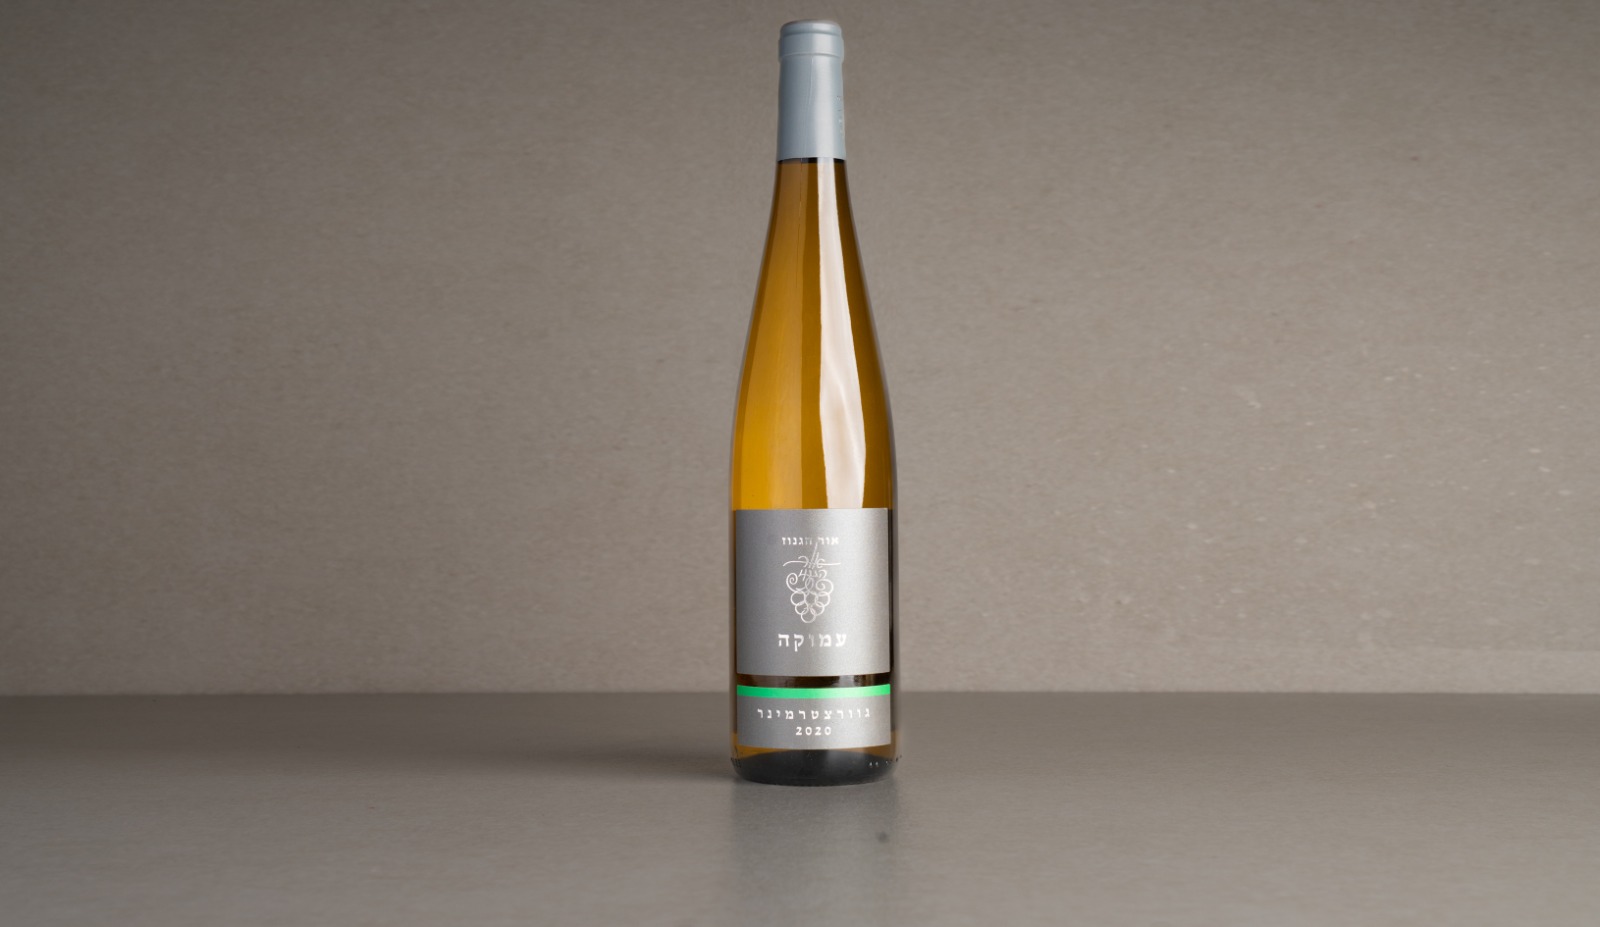 יין לבן חצי יבש " אור הגנוז" עמוקה גוורצטרמינר 2020